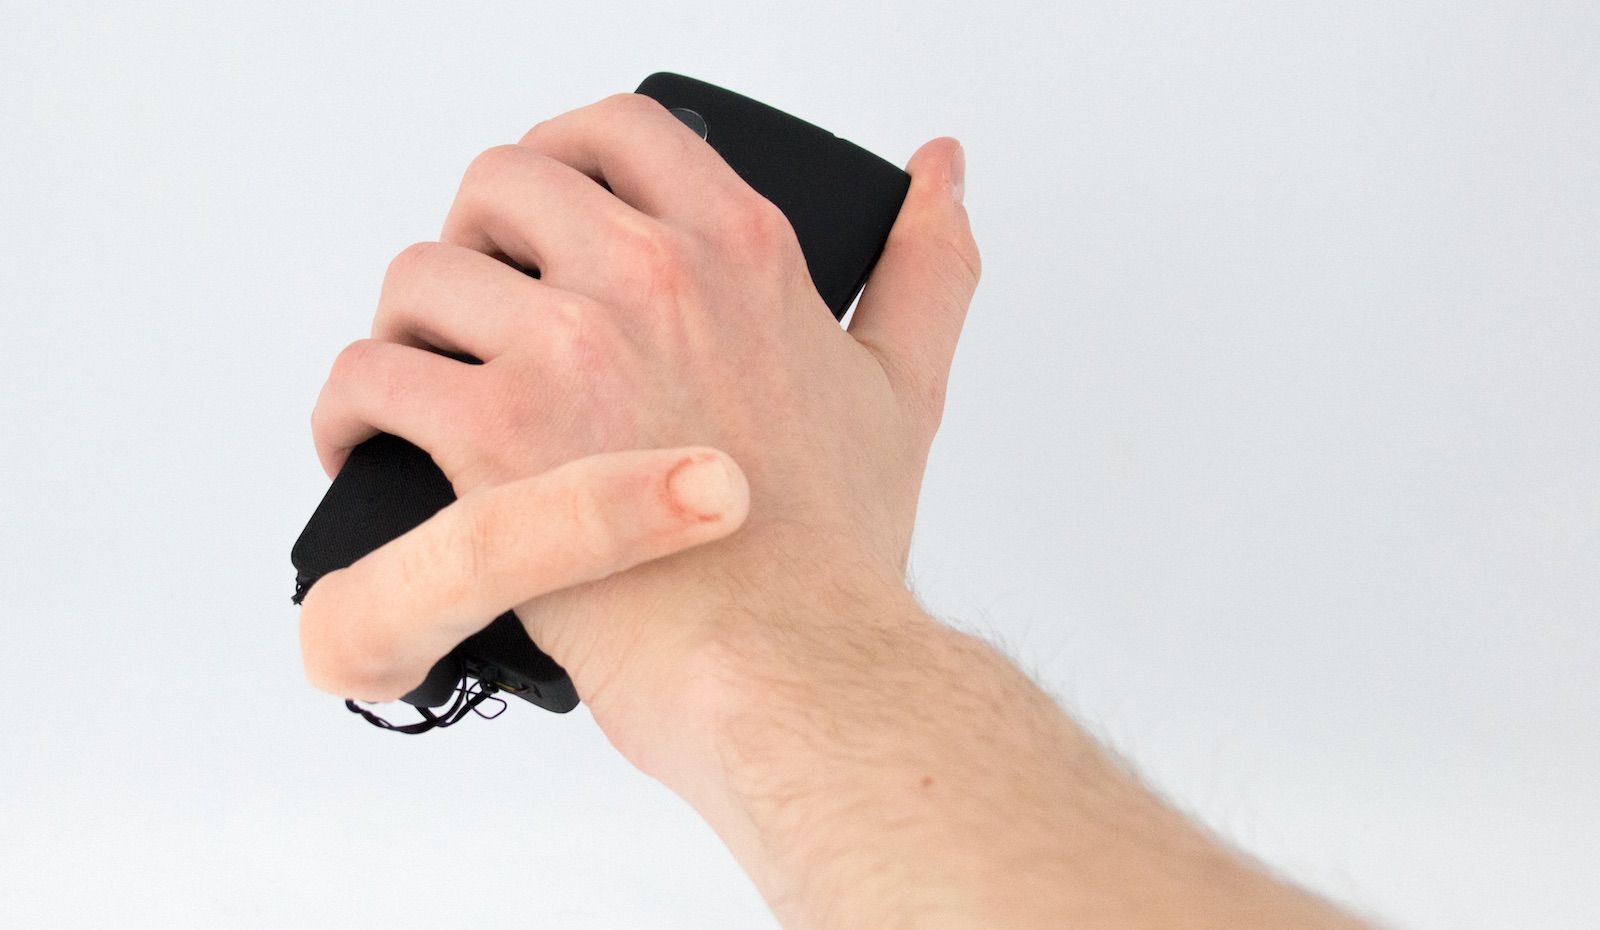 Dodatkowy sztuczny palec do obsługi smartfona